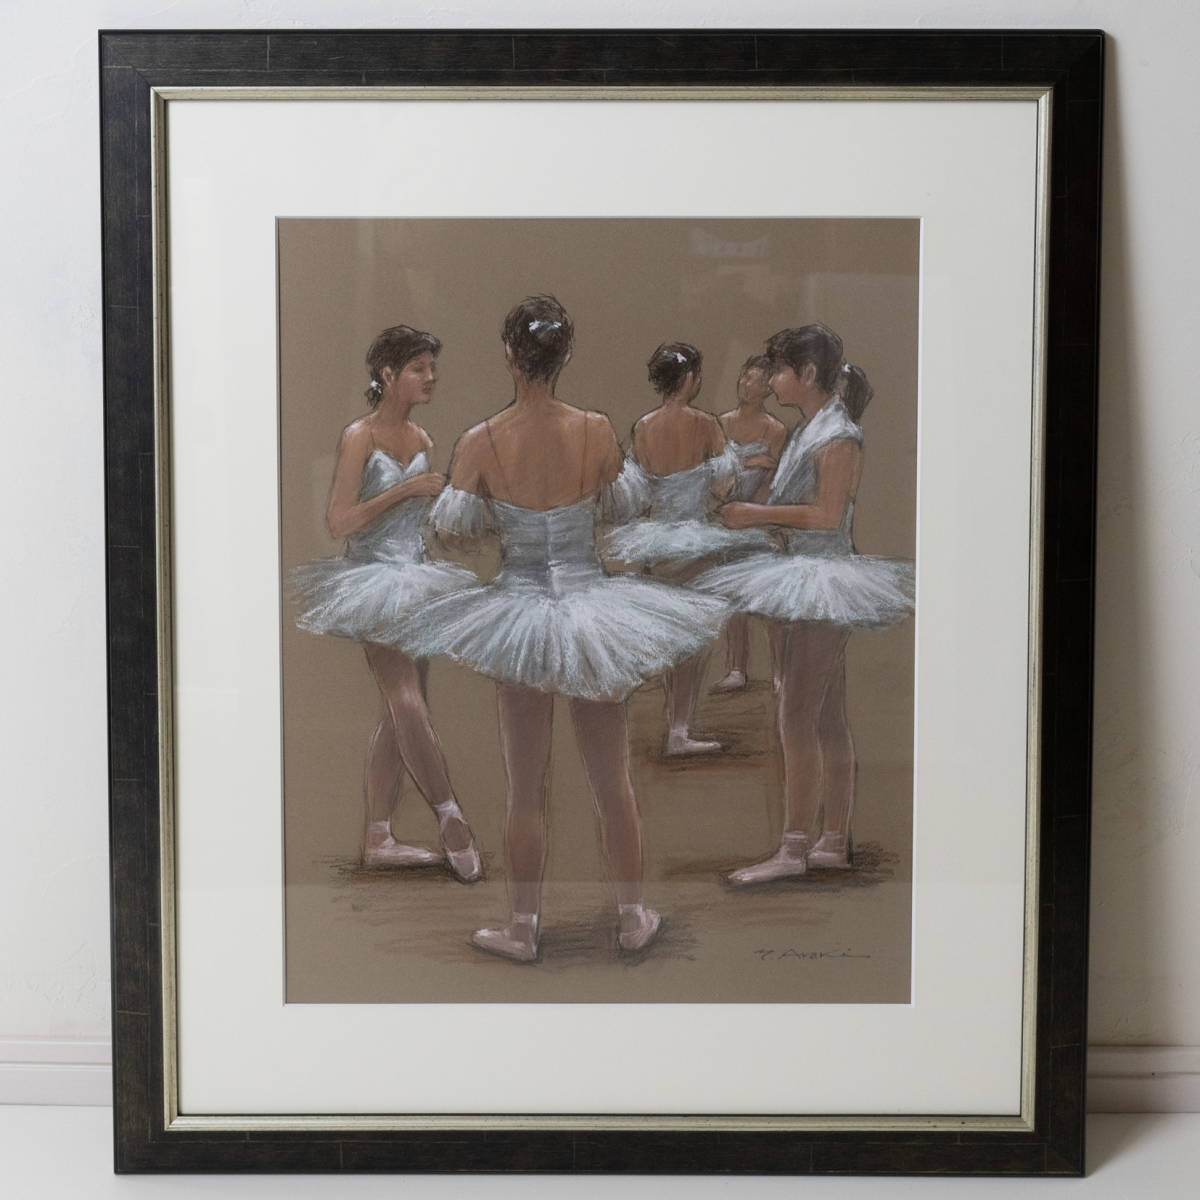 保证正品荒木芳太郎芭蕾舞女演员放松时间粉彩画尺寸 10 一幅绘画, 艺术品, 绘画, 粉彩画, 蜡笔画